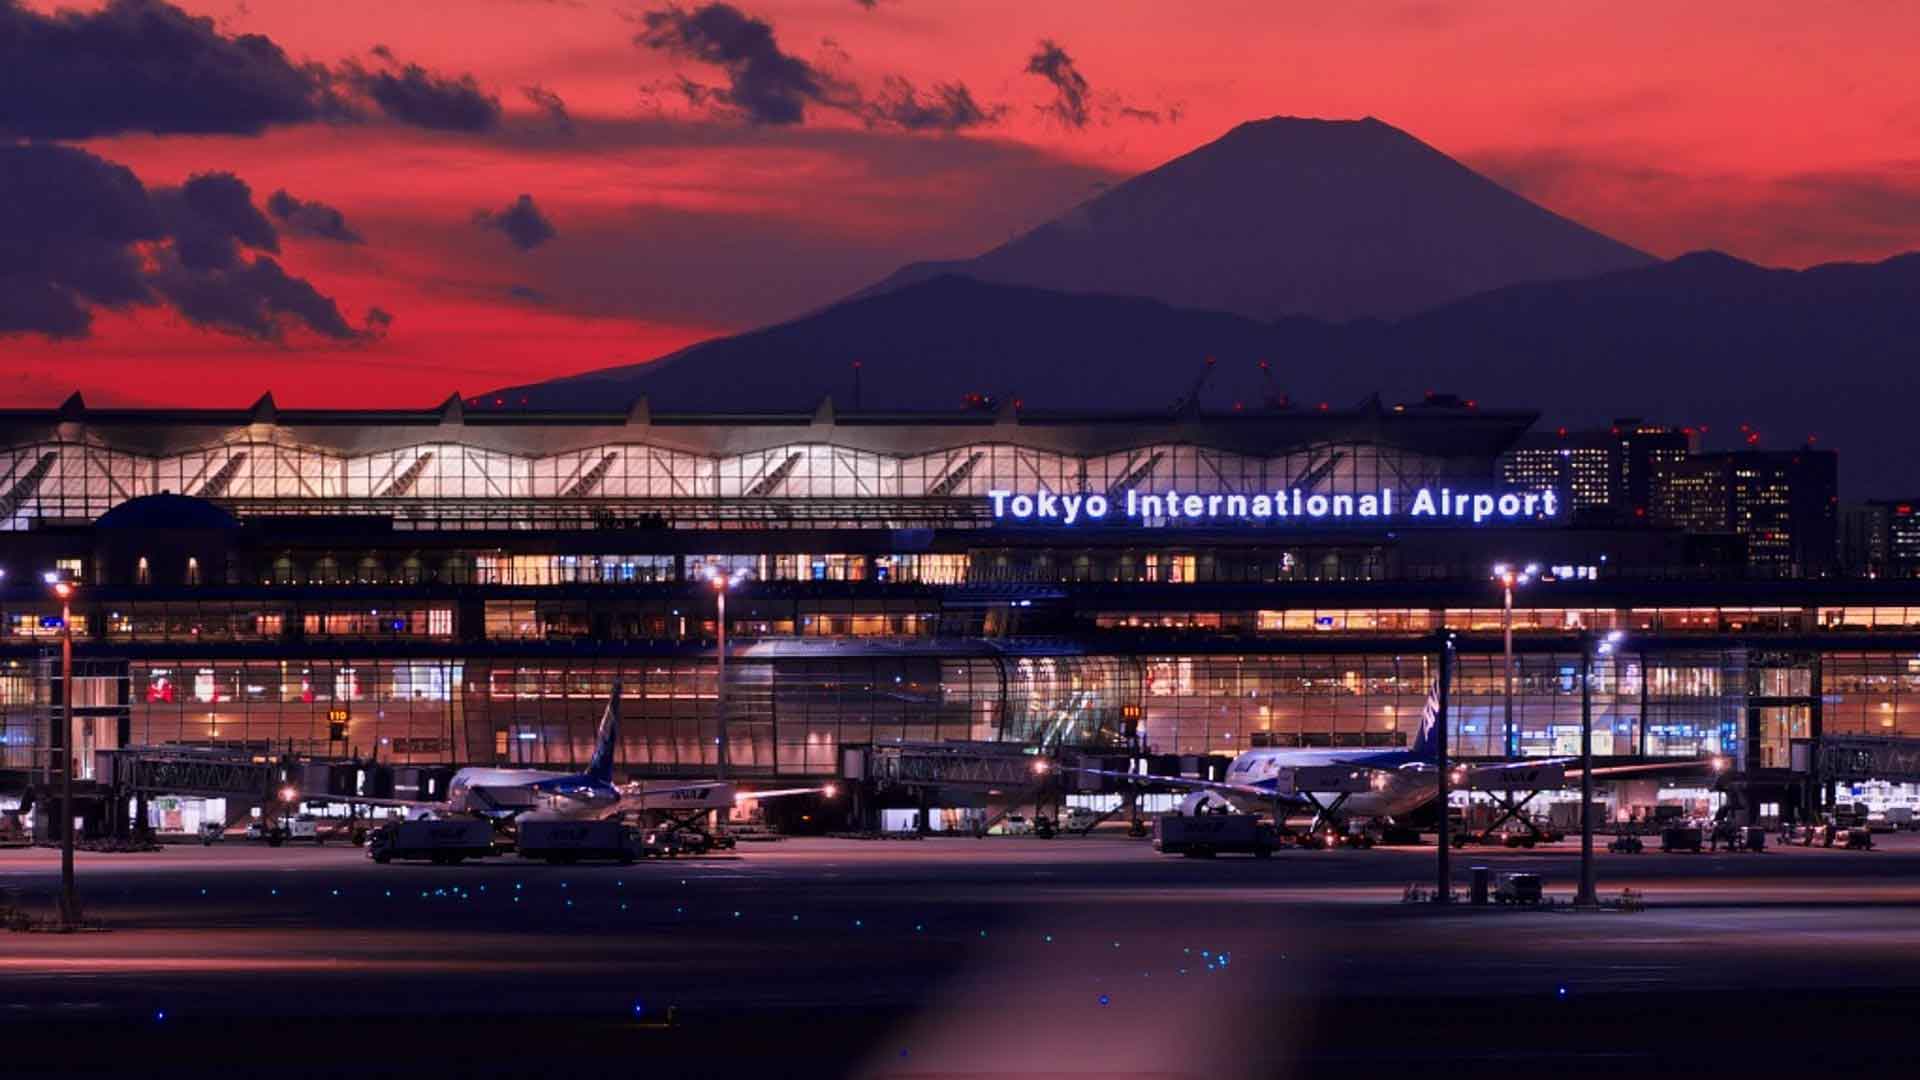 Haneda aeroport japon arrivee transfert